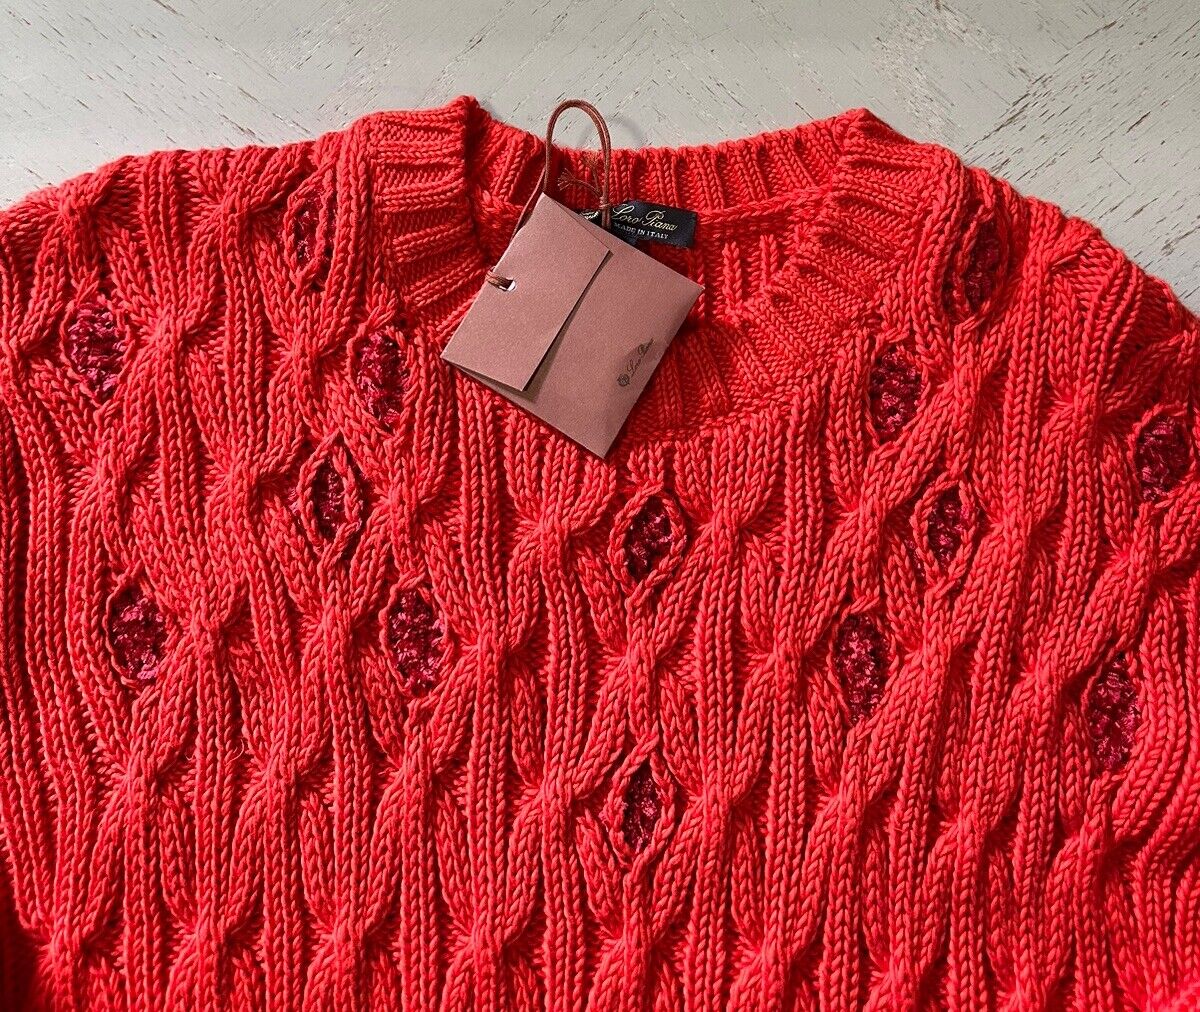 Loro Piana Women Valencia Cabled Cotton Sweater Orange Size L Italy $3350